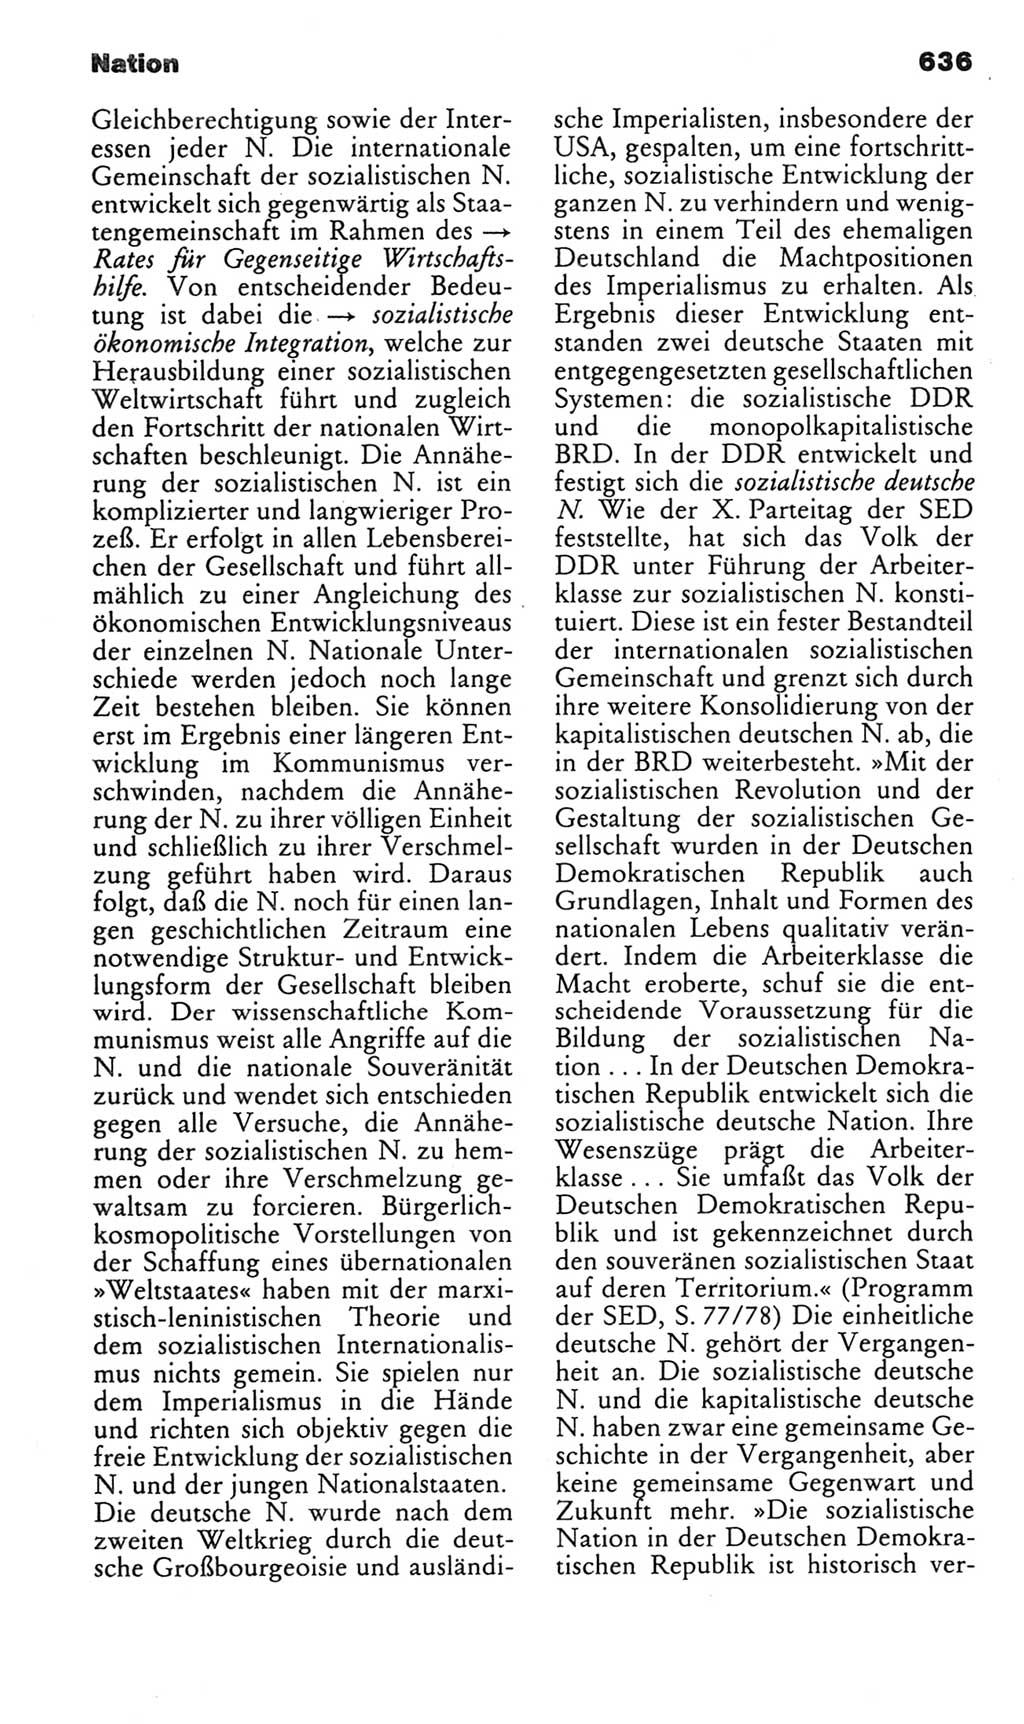 Kleines politisches Wörterbuch [Deutsche Demokratische Republik (DDR)] 1985, Seite 636 (Kl. pol. Wb. DDR 1985, S. 636)